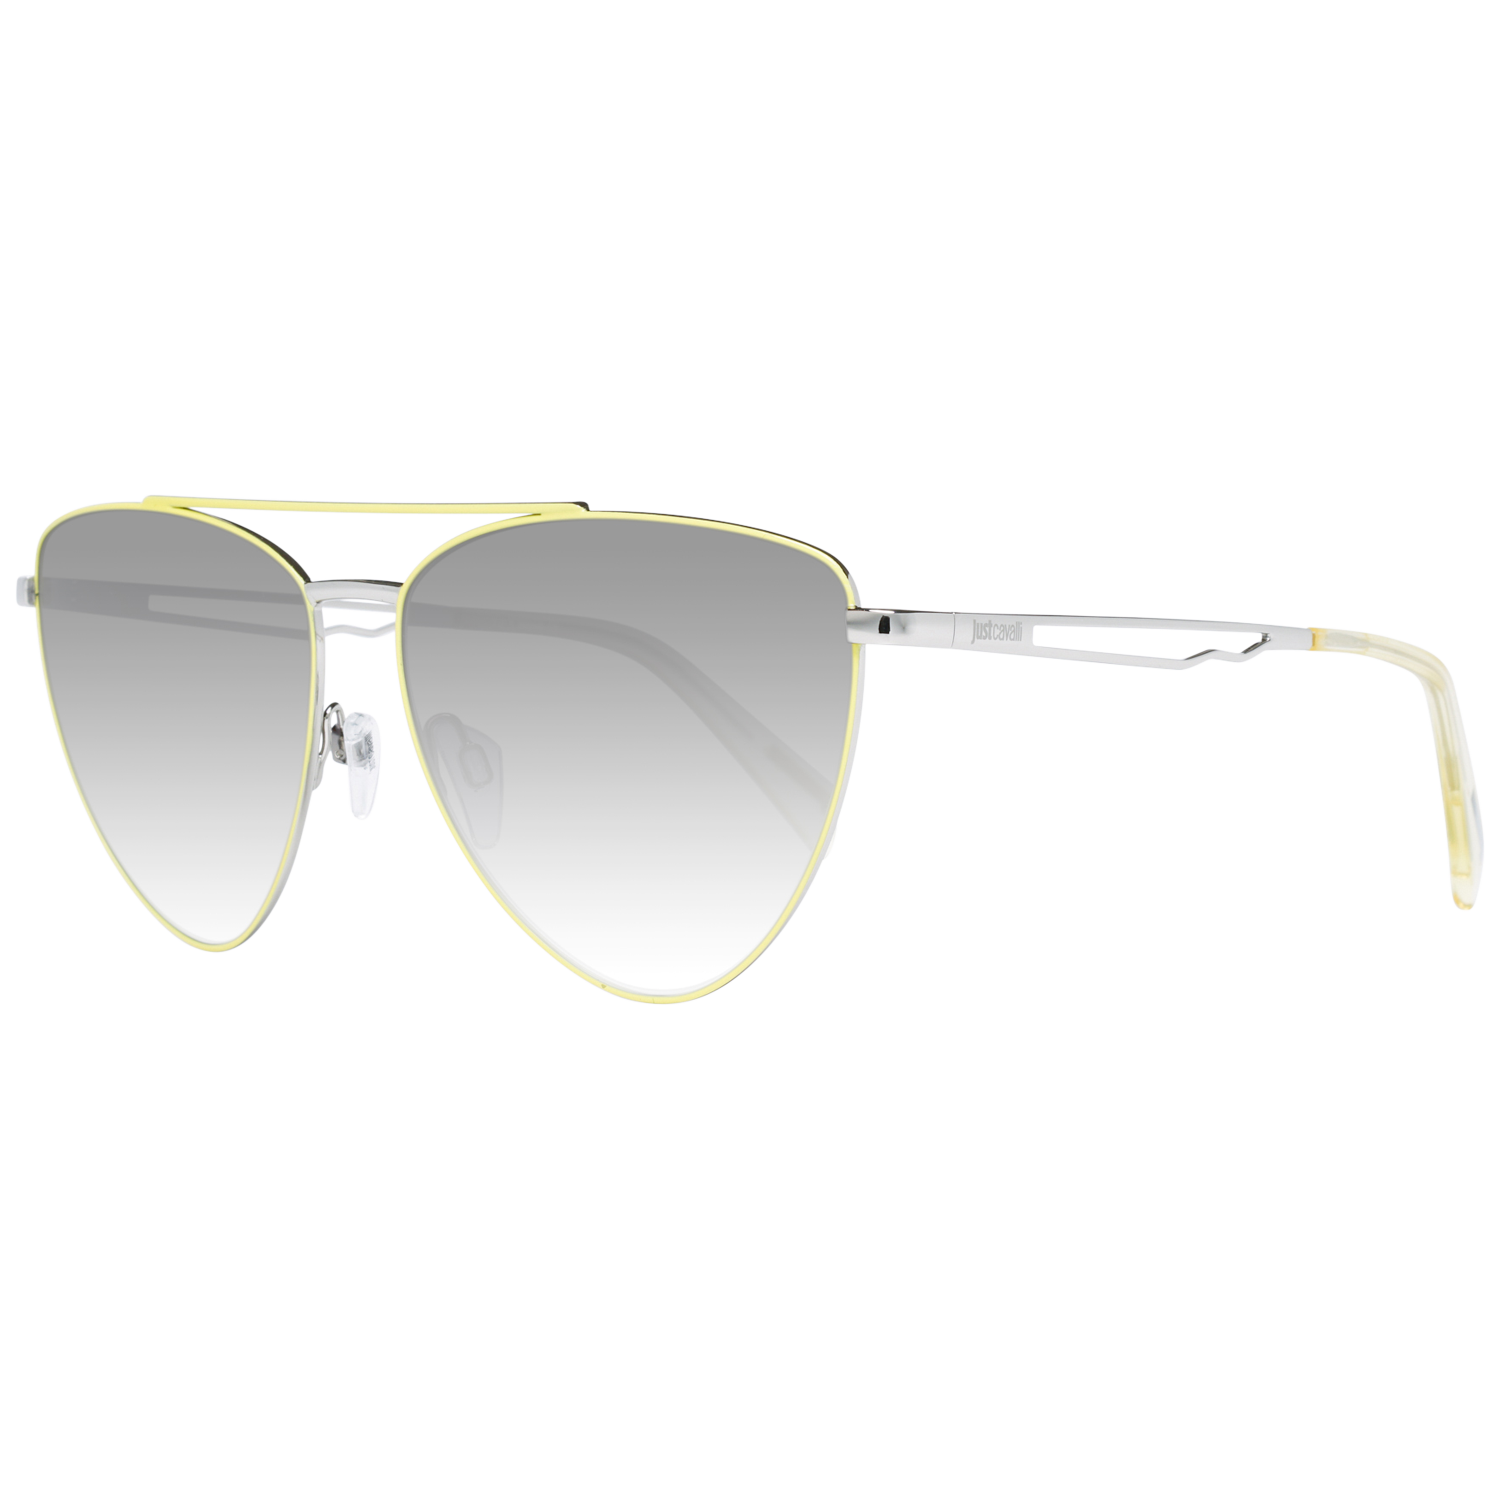 Just Cavalli Sunglasses JC839S 41B 58